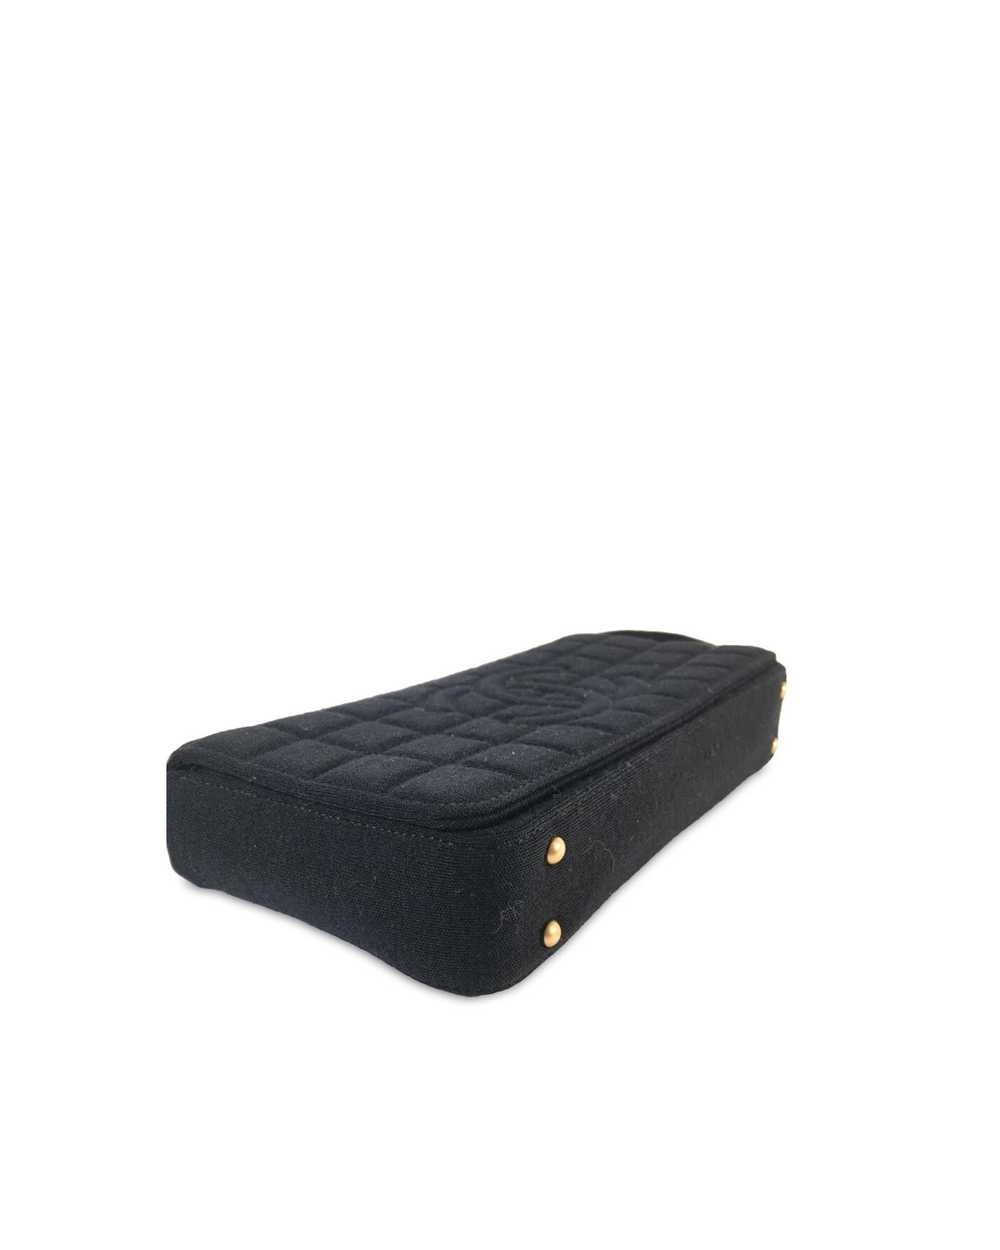 Chanel Chocolate Bar Flap Shoulder Bag - image 4